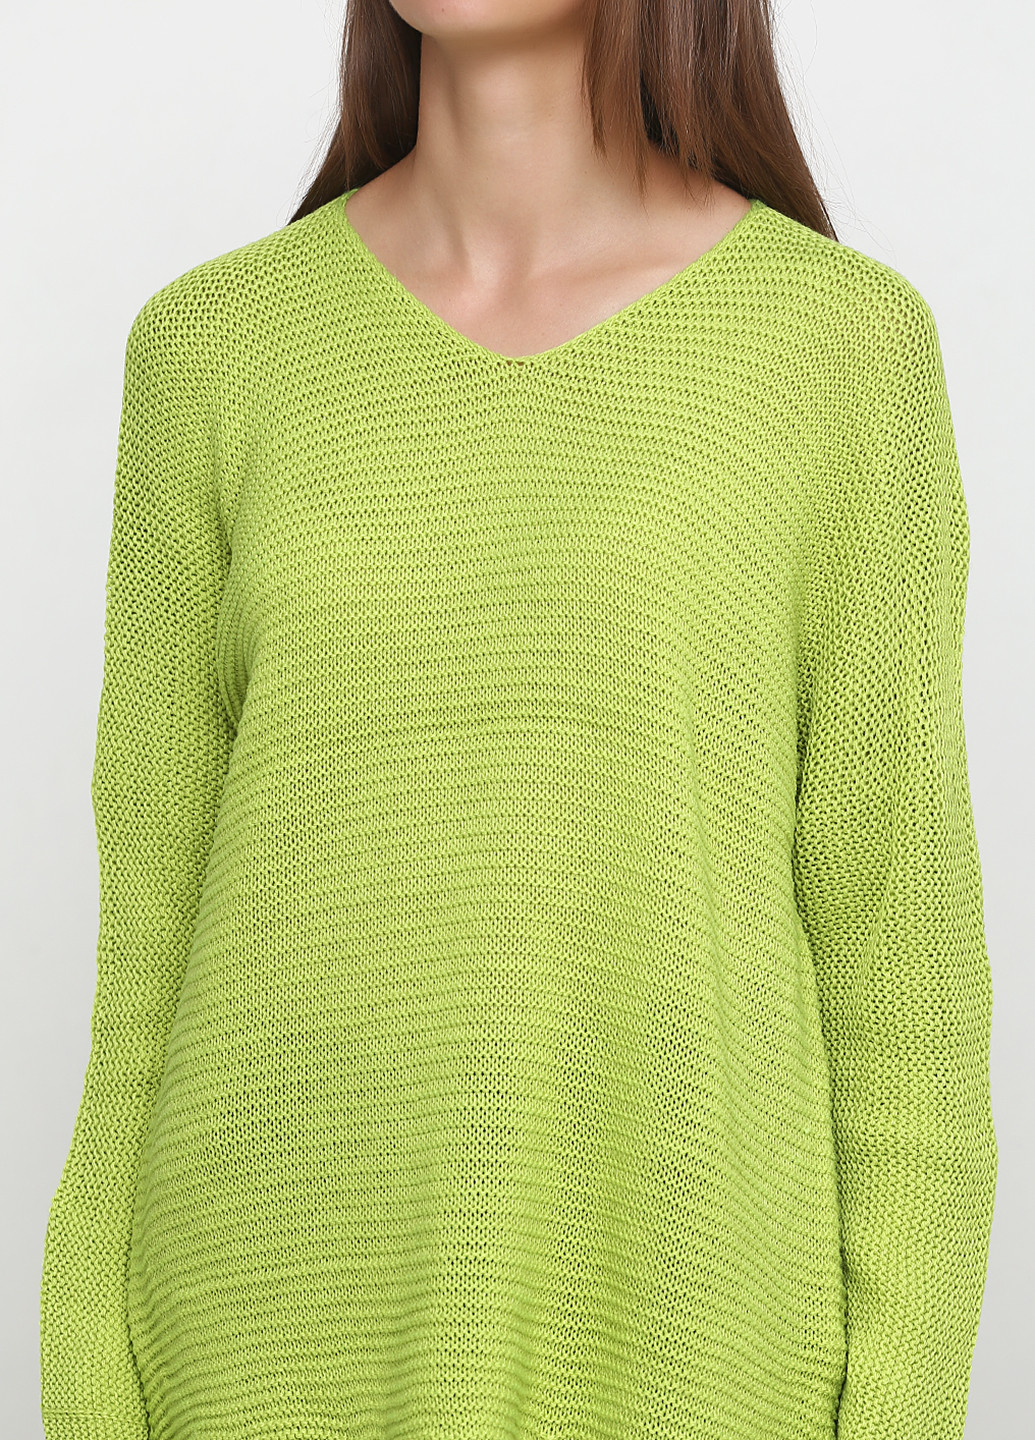 Салатовый демисезонный пуловер пуловер Eser